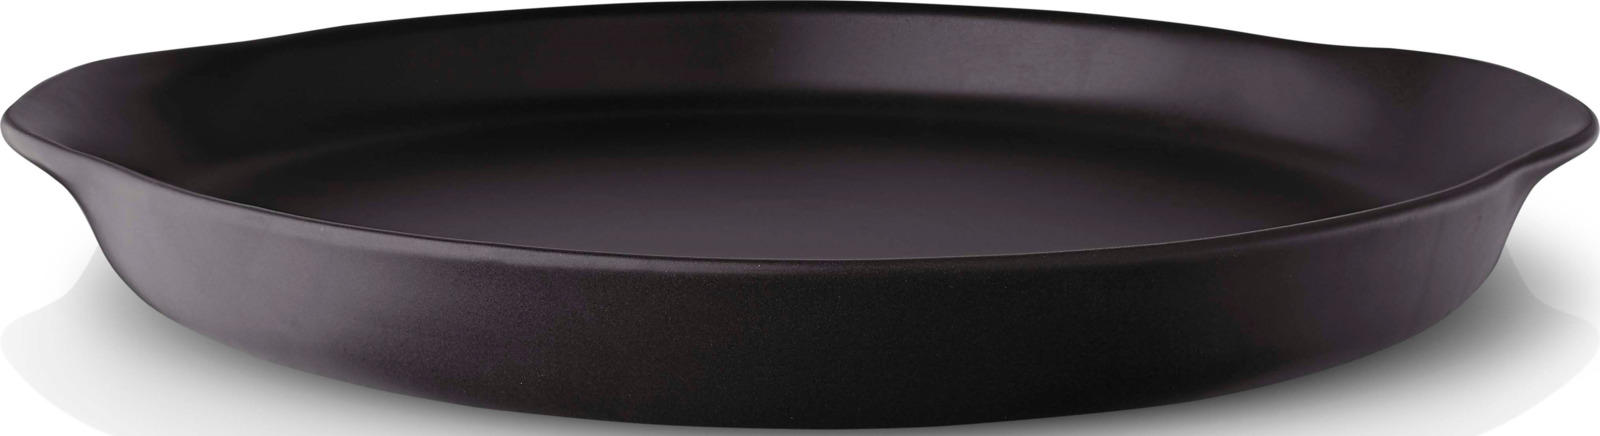 фото Блюдо сервировочное Eva Solo Nordic Kitchen, цвет: черный, диаметр 30 см